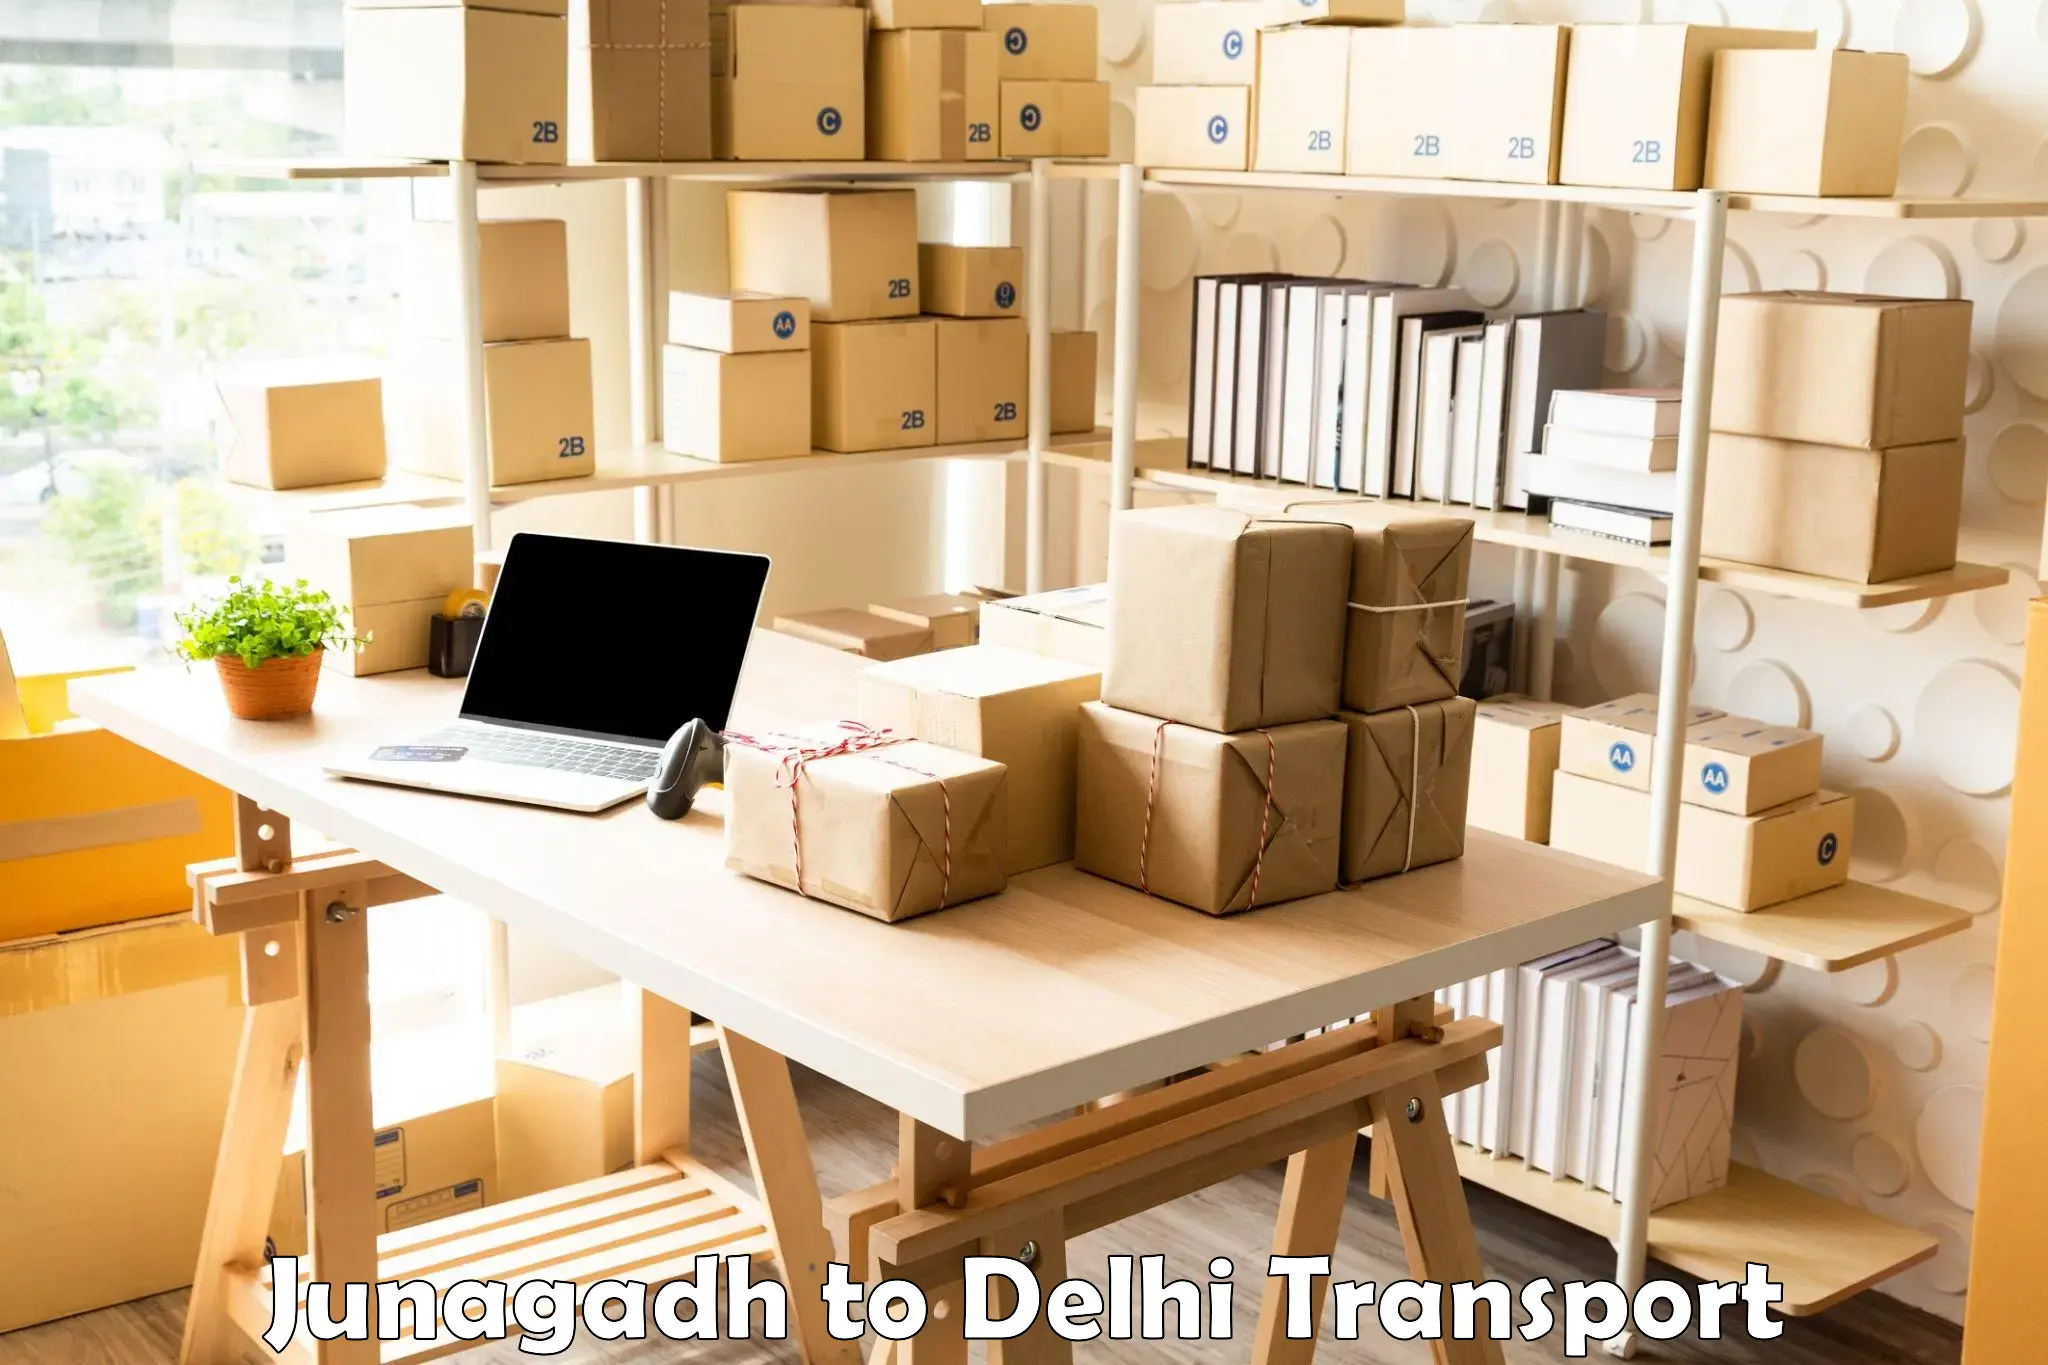 Vehicle courier services Junagadh to Jawaharlal Nehru University New Delhi